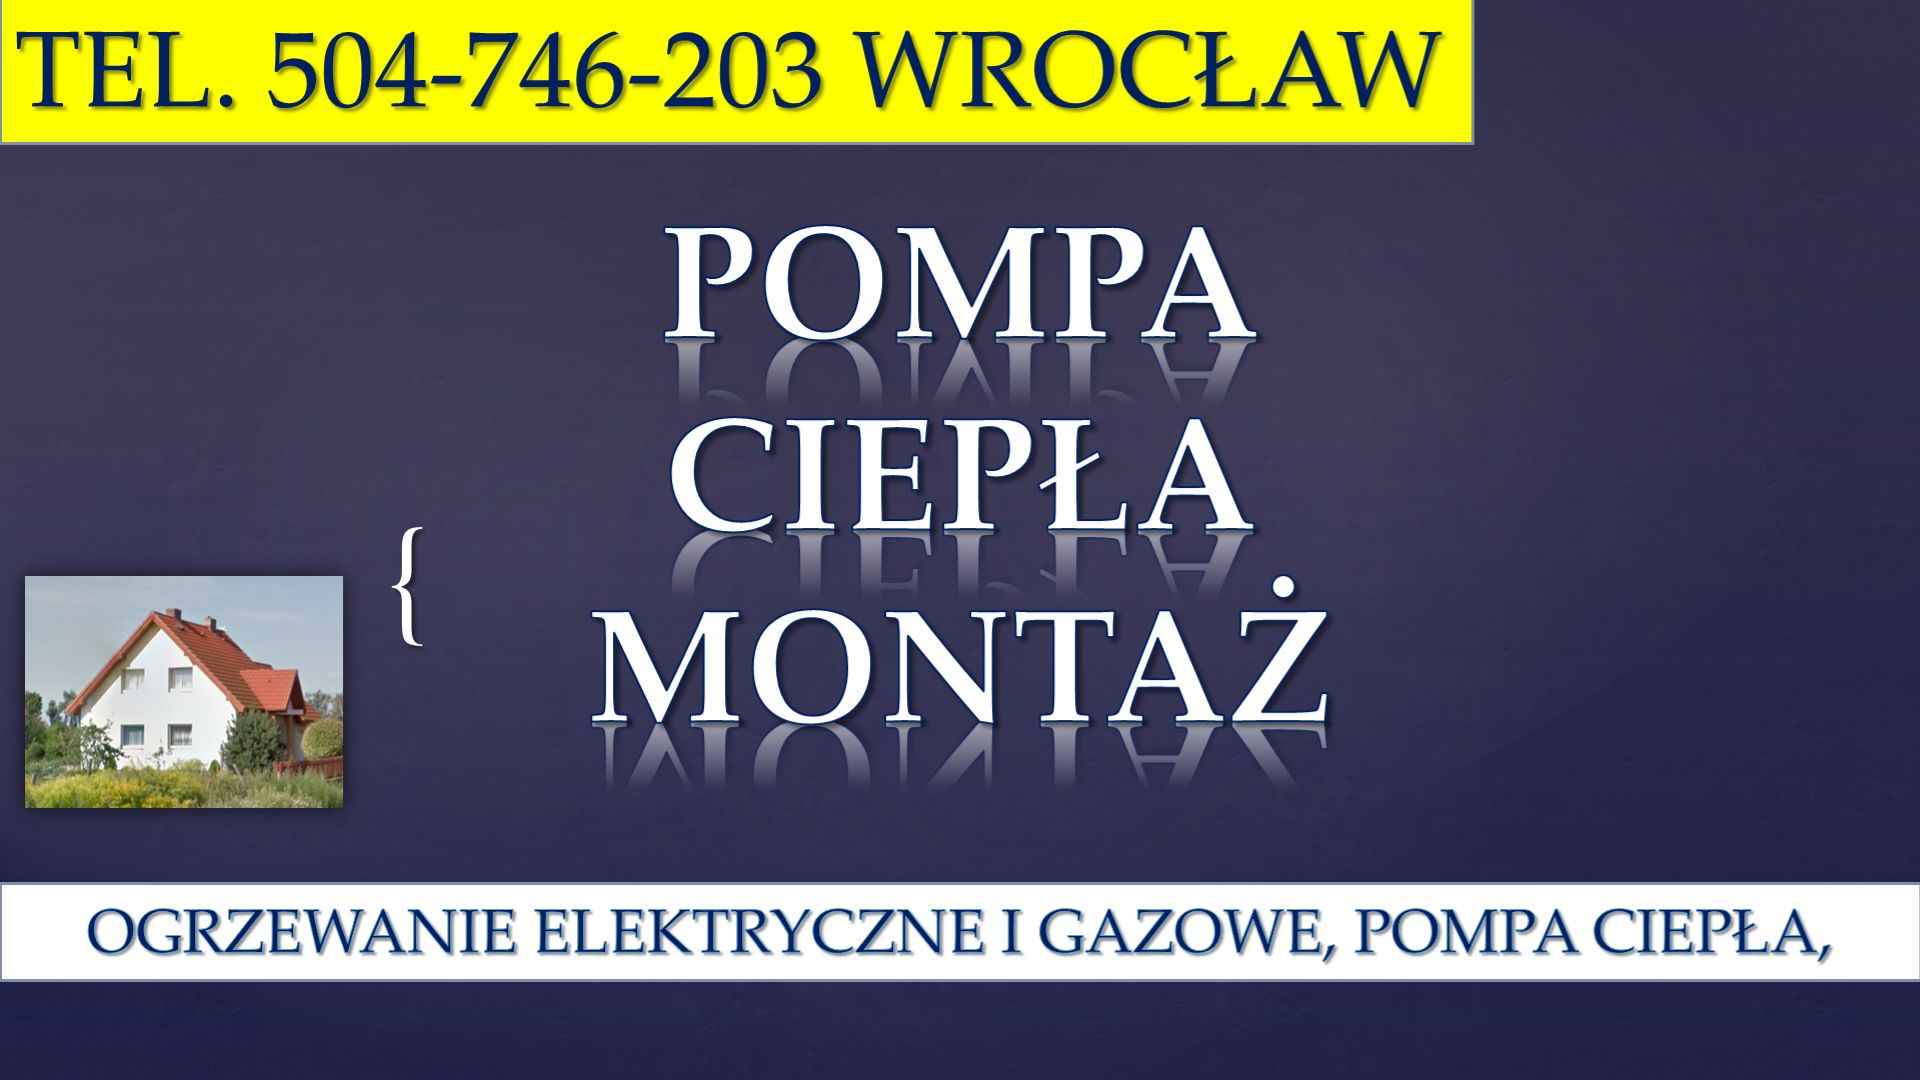 Cena za montaż pompy ciepła, tel. 504-746-203, Wrocław., pompa ciepła, Psie Pole - zdjęcie 4